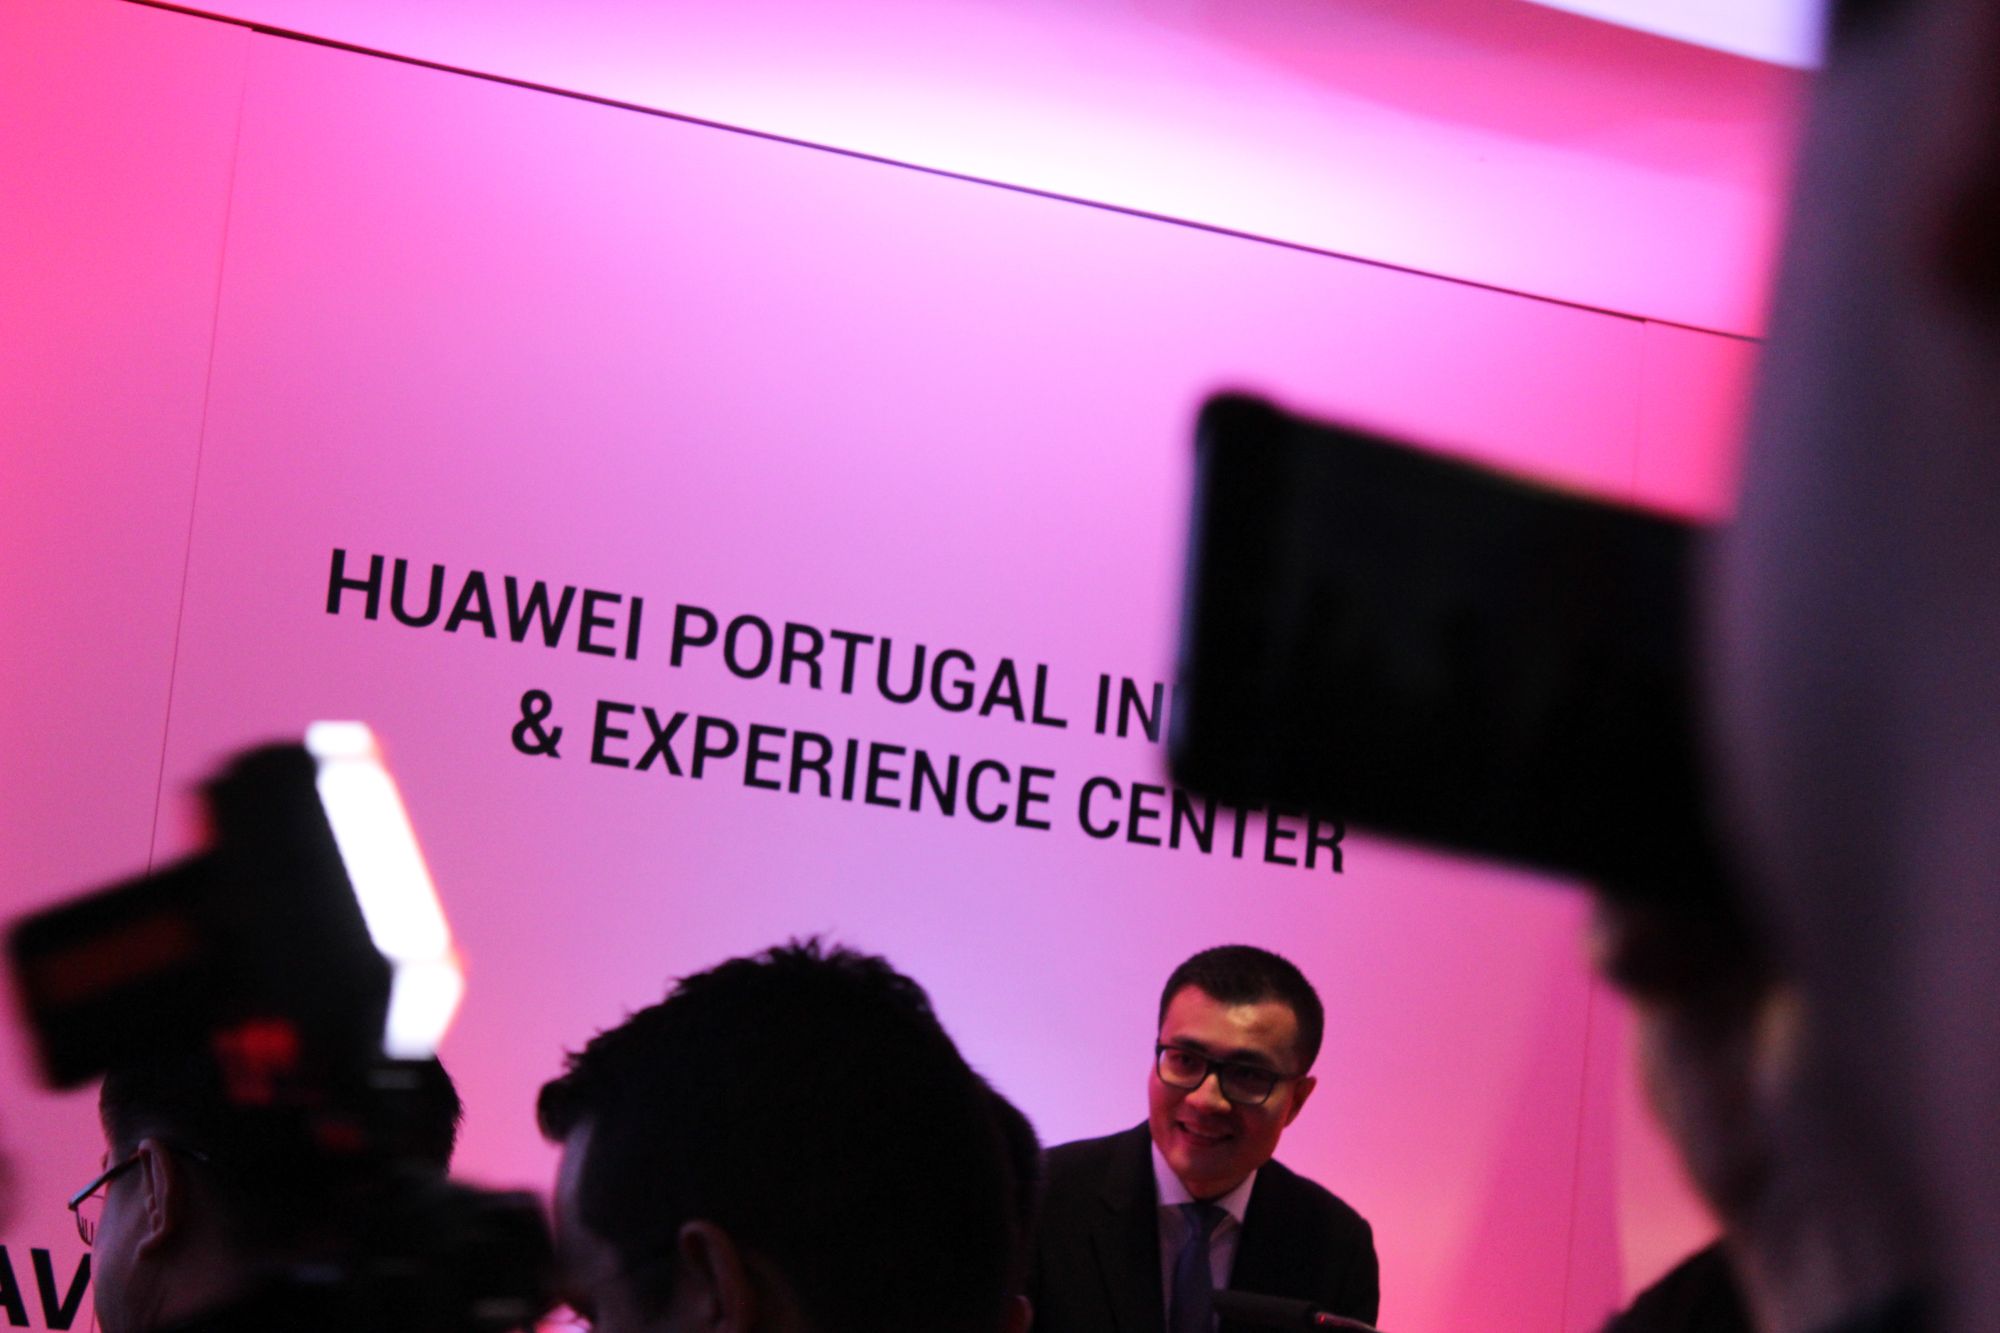 Huawei Portugal